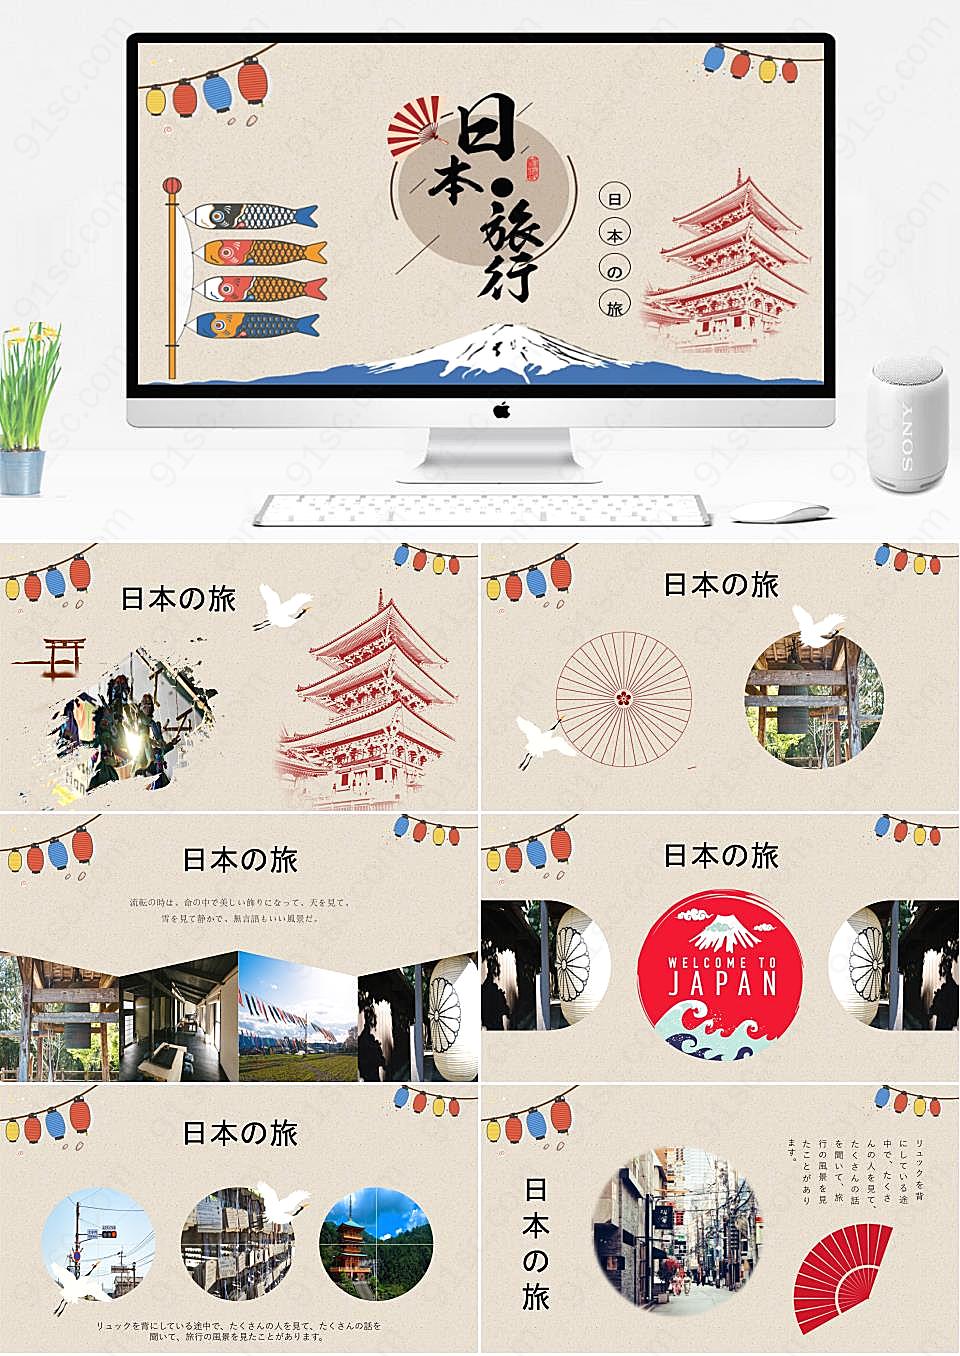 日本旅行卡通插画风格电子相册PPT主题素材旅游旅行PPT模板下载